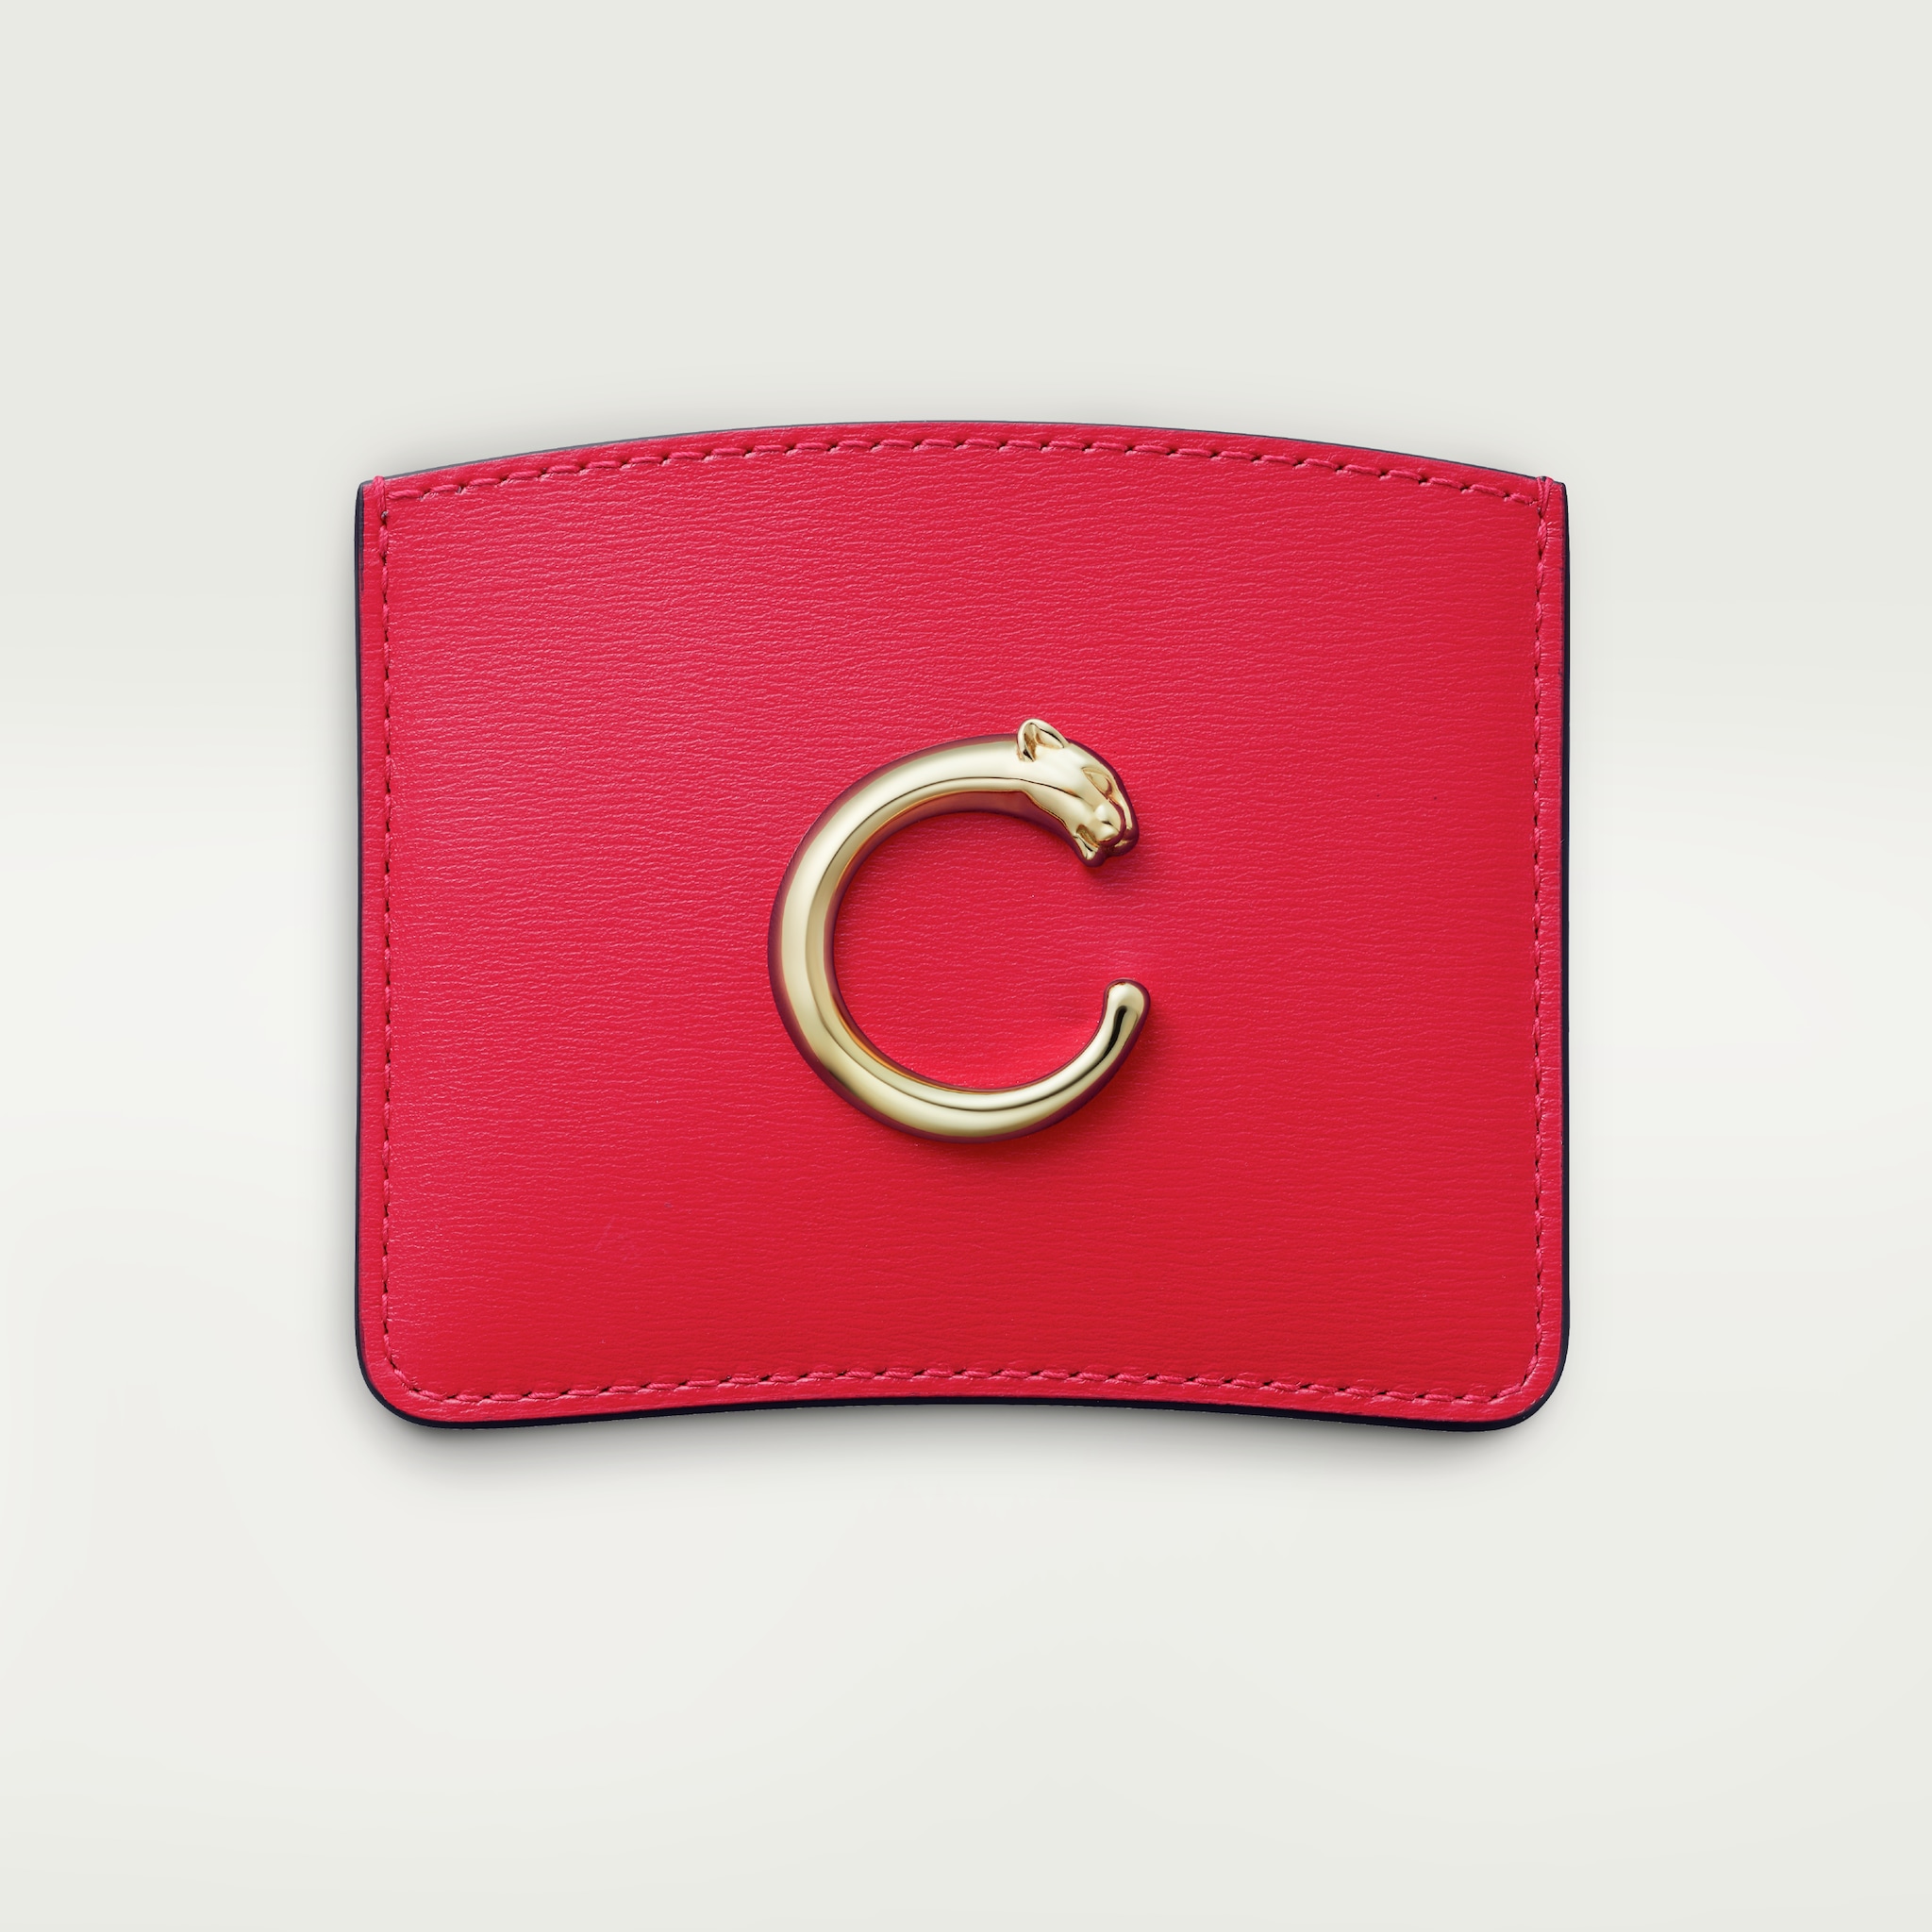 Panthère de Cartier Small Leather Goods, Card holderPoppy calfskin, golden finish